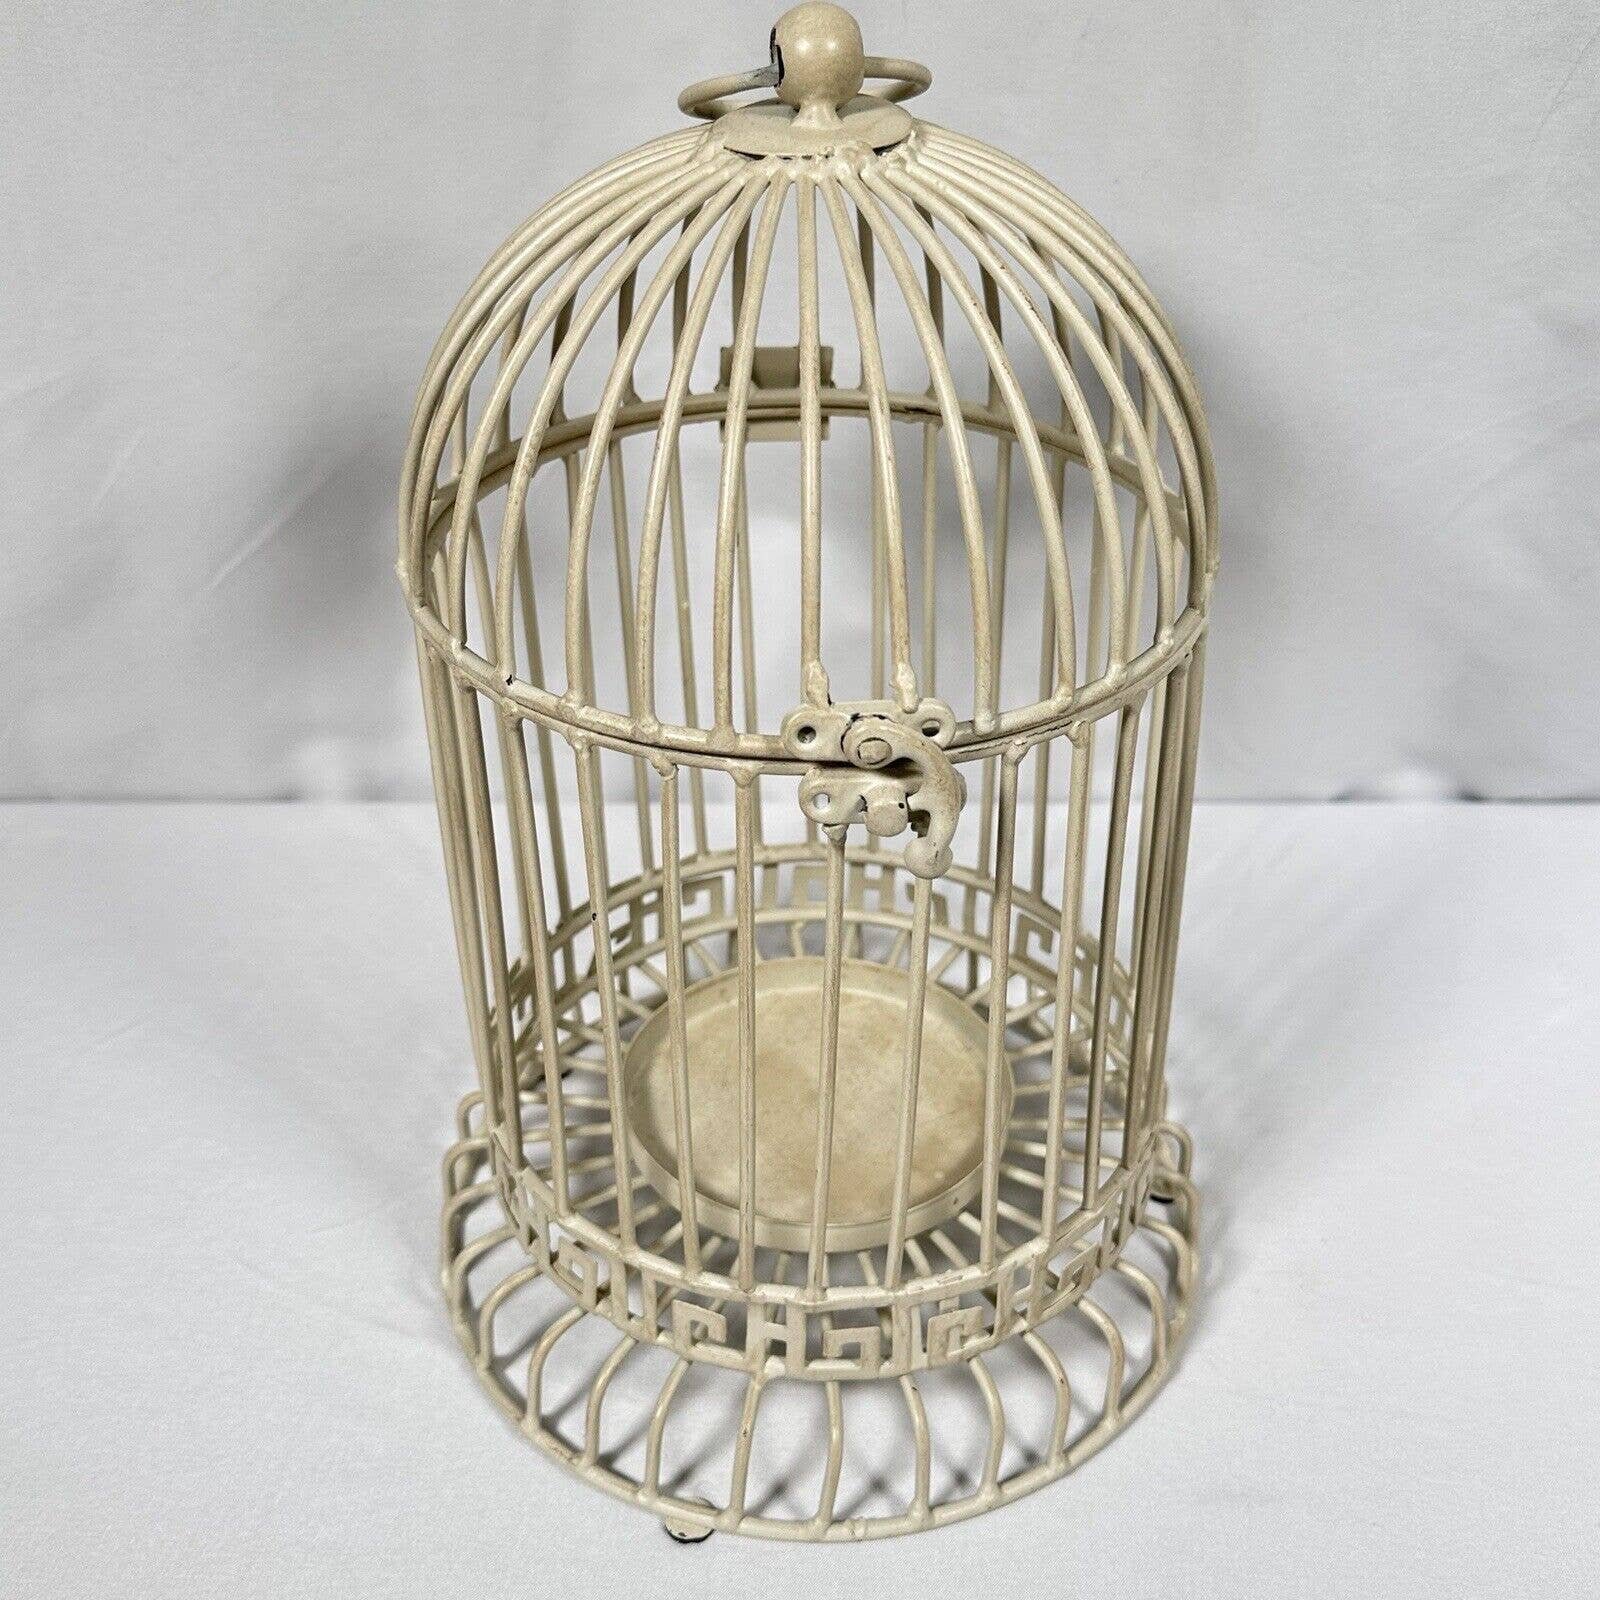 Metal Bird Cage Vintage Decor Shabby Country Cottage Chic Birdcage Candle Holder AkvwNaDhE